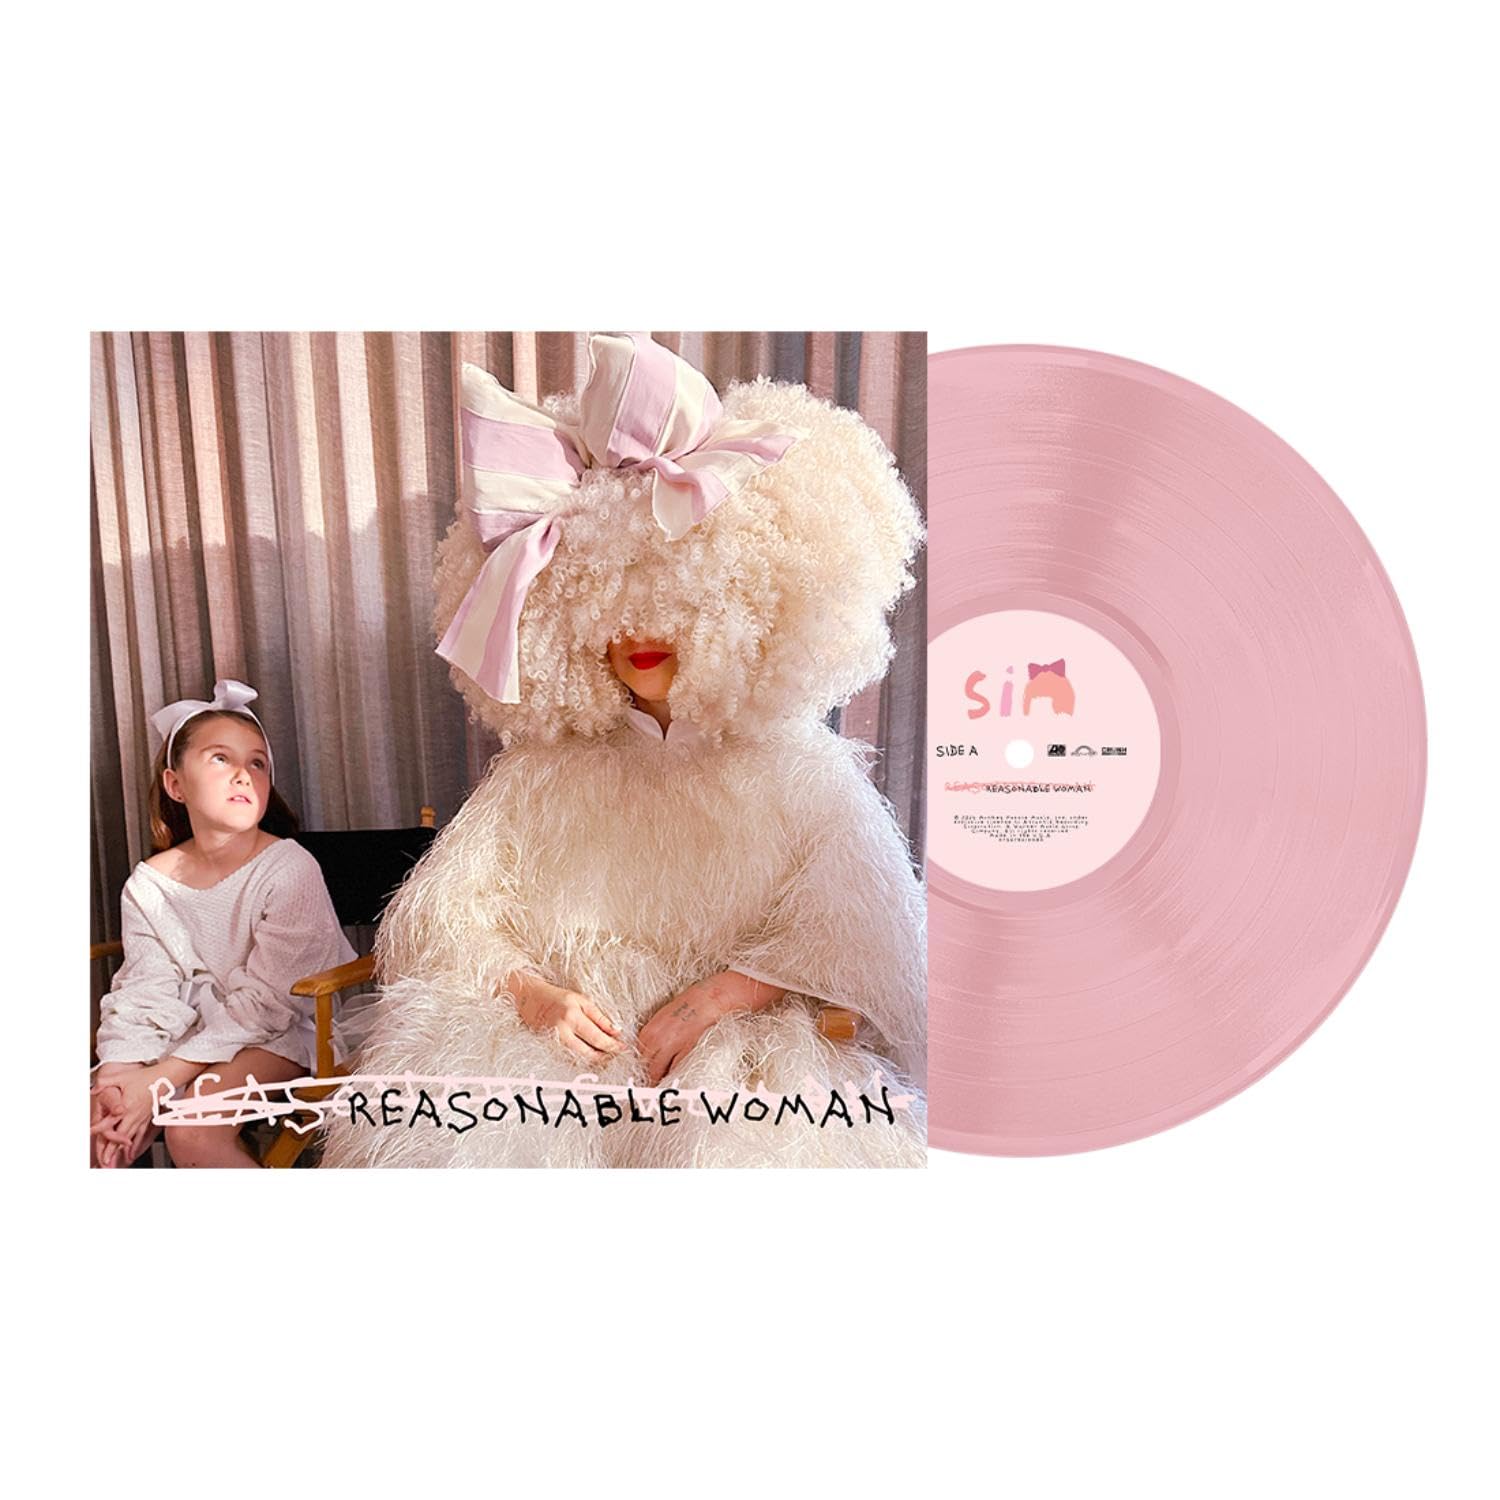 SIA – REASONABLE WOMAN pink vinyl LP